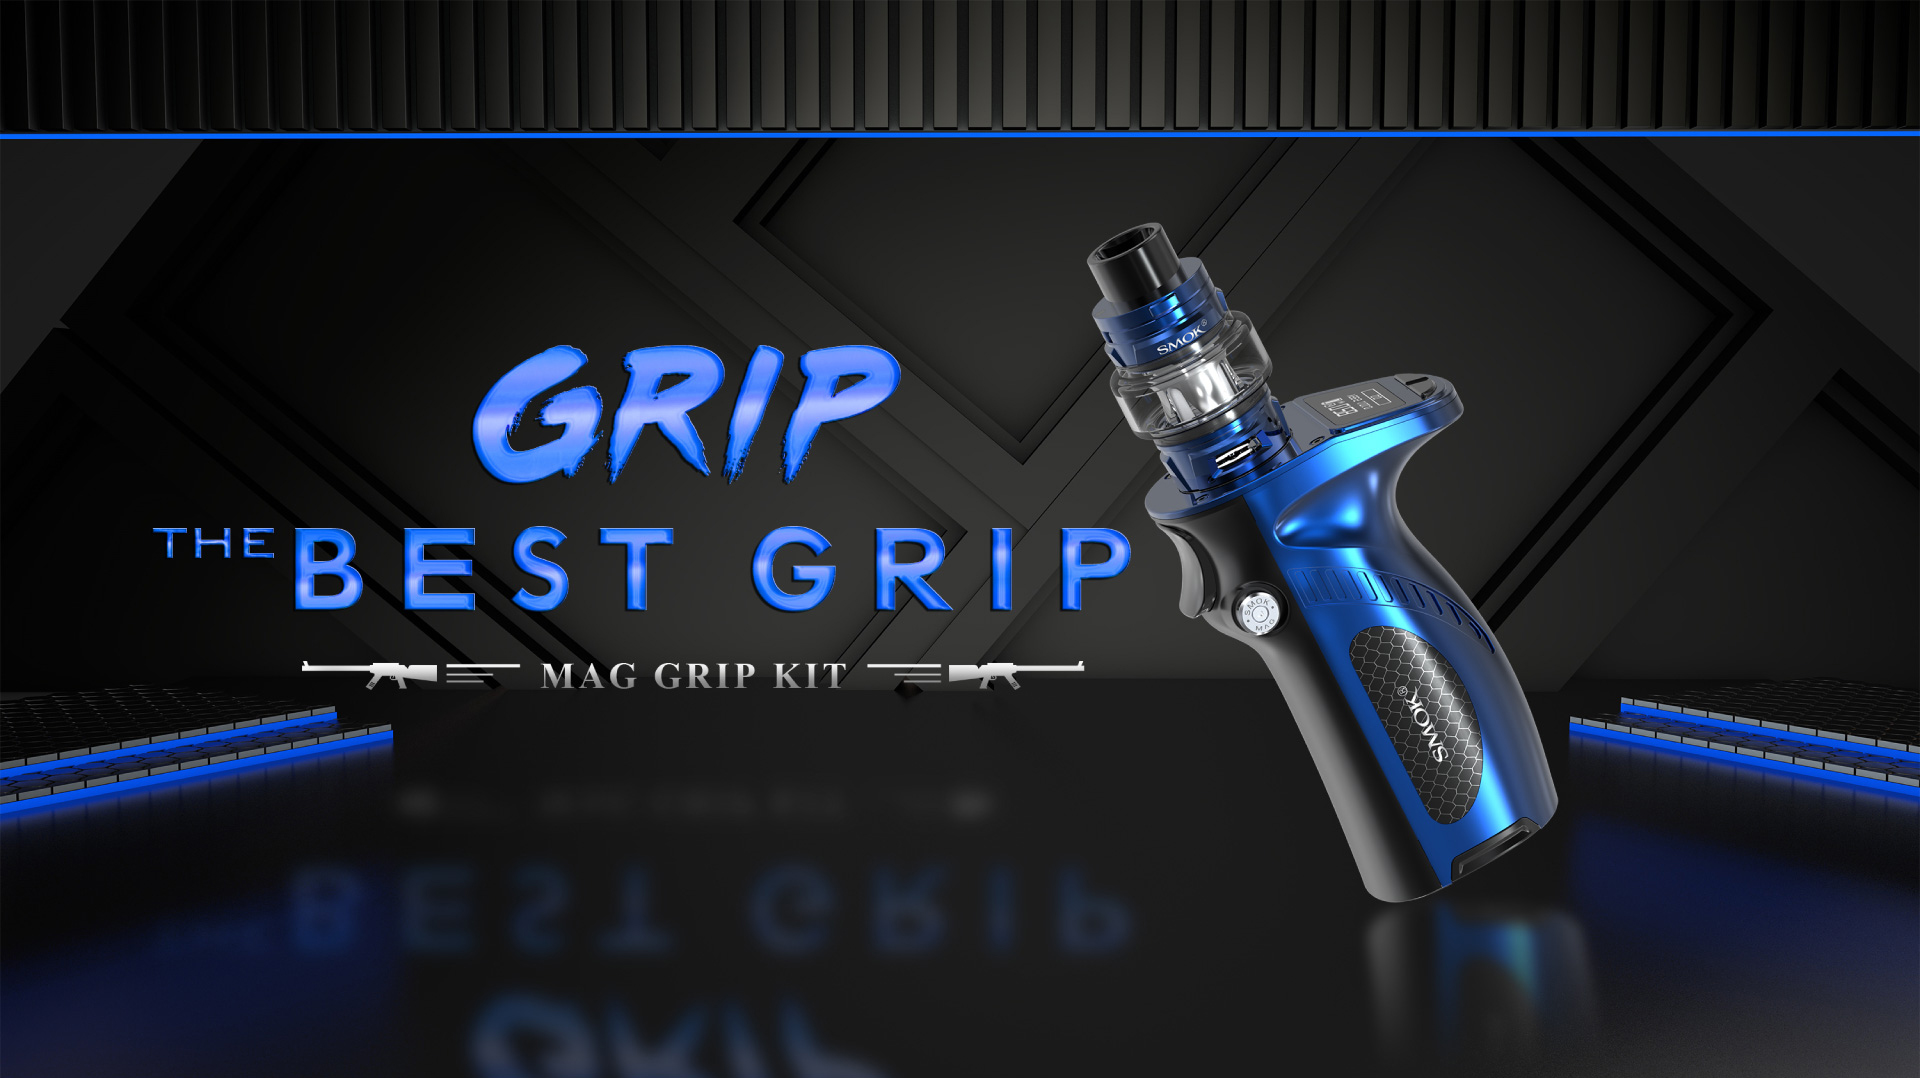 Mag Grip Kit